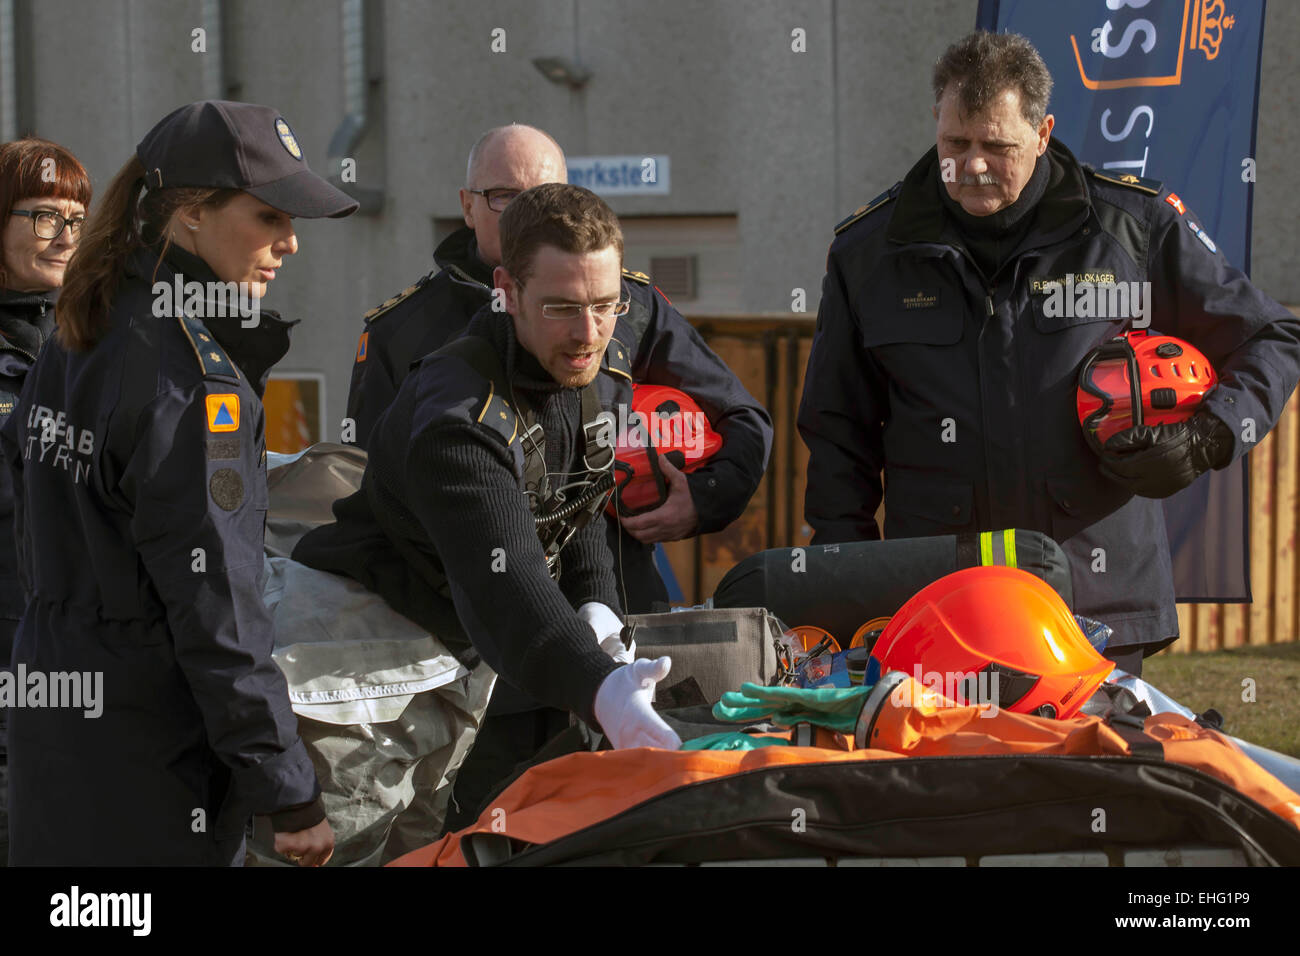 Hedehusene, Dinamarca. 13 de marzo de 2015. Los trabajadores de rescate mostrar S.A.R. la Princesa Marie Viste de protección que pueden utilizar en caso de desastre químico de crédito: OJPHOTOS/Alamy Live News Foto de stock